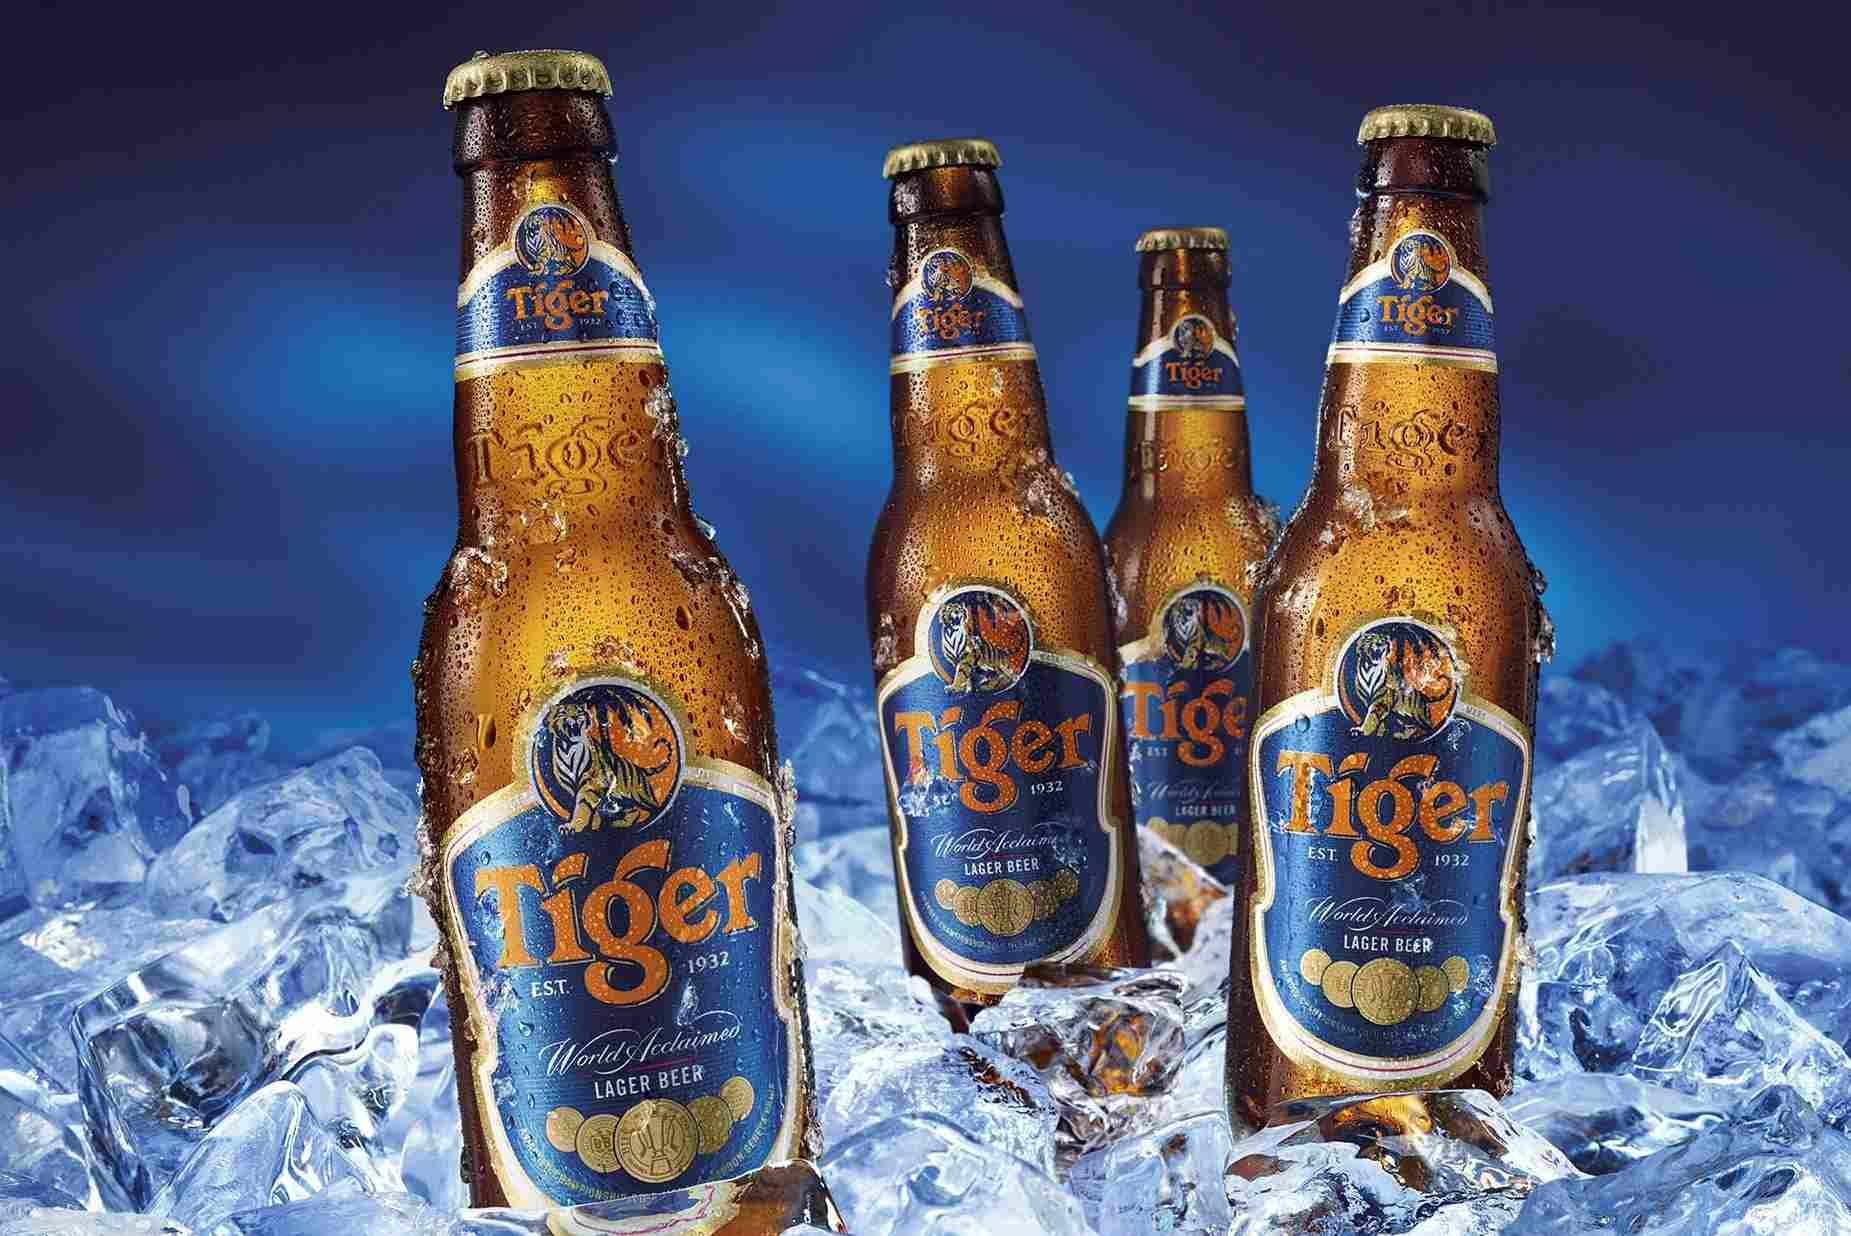 Chiến lược marketing của bia Tiger từ bia địa phương trở thành thương hiệu toàn cầu